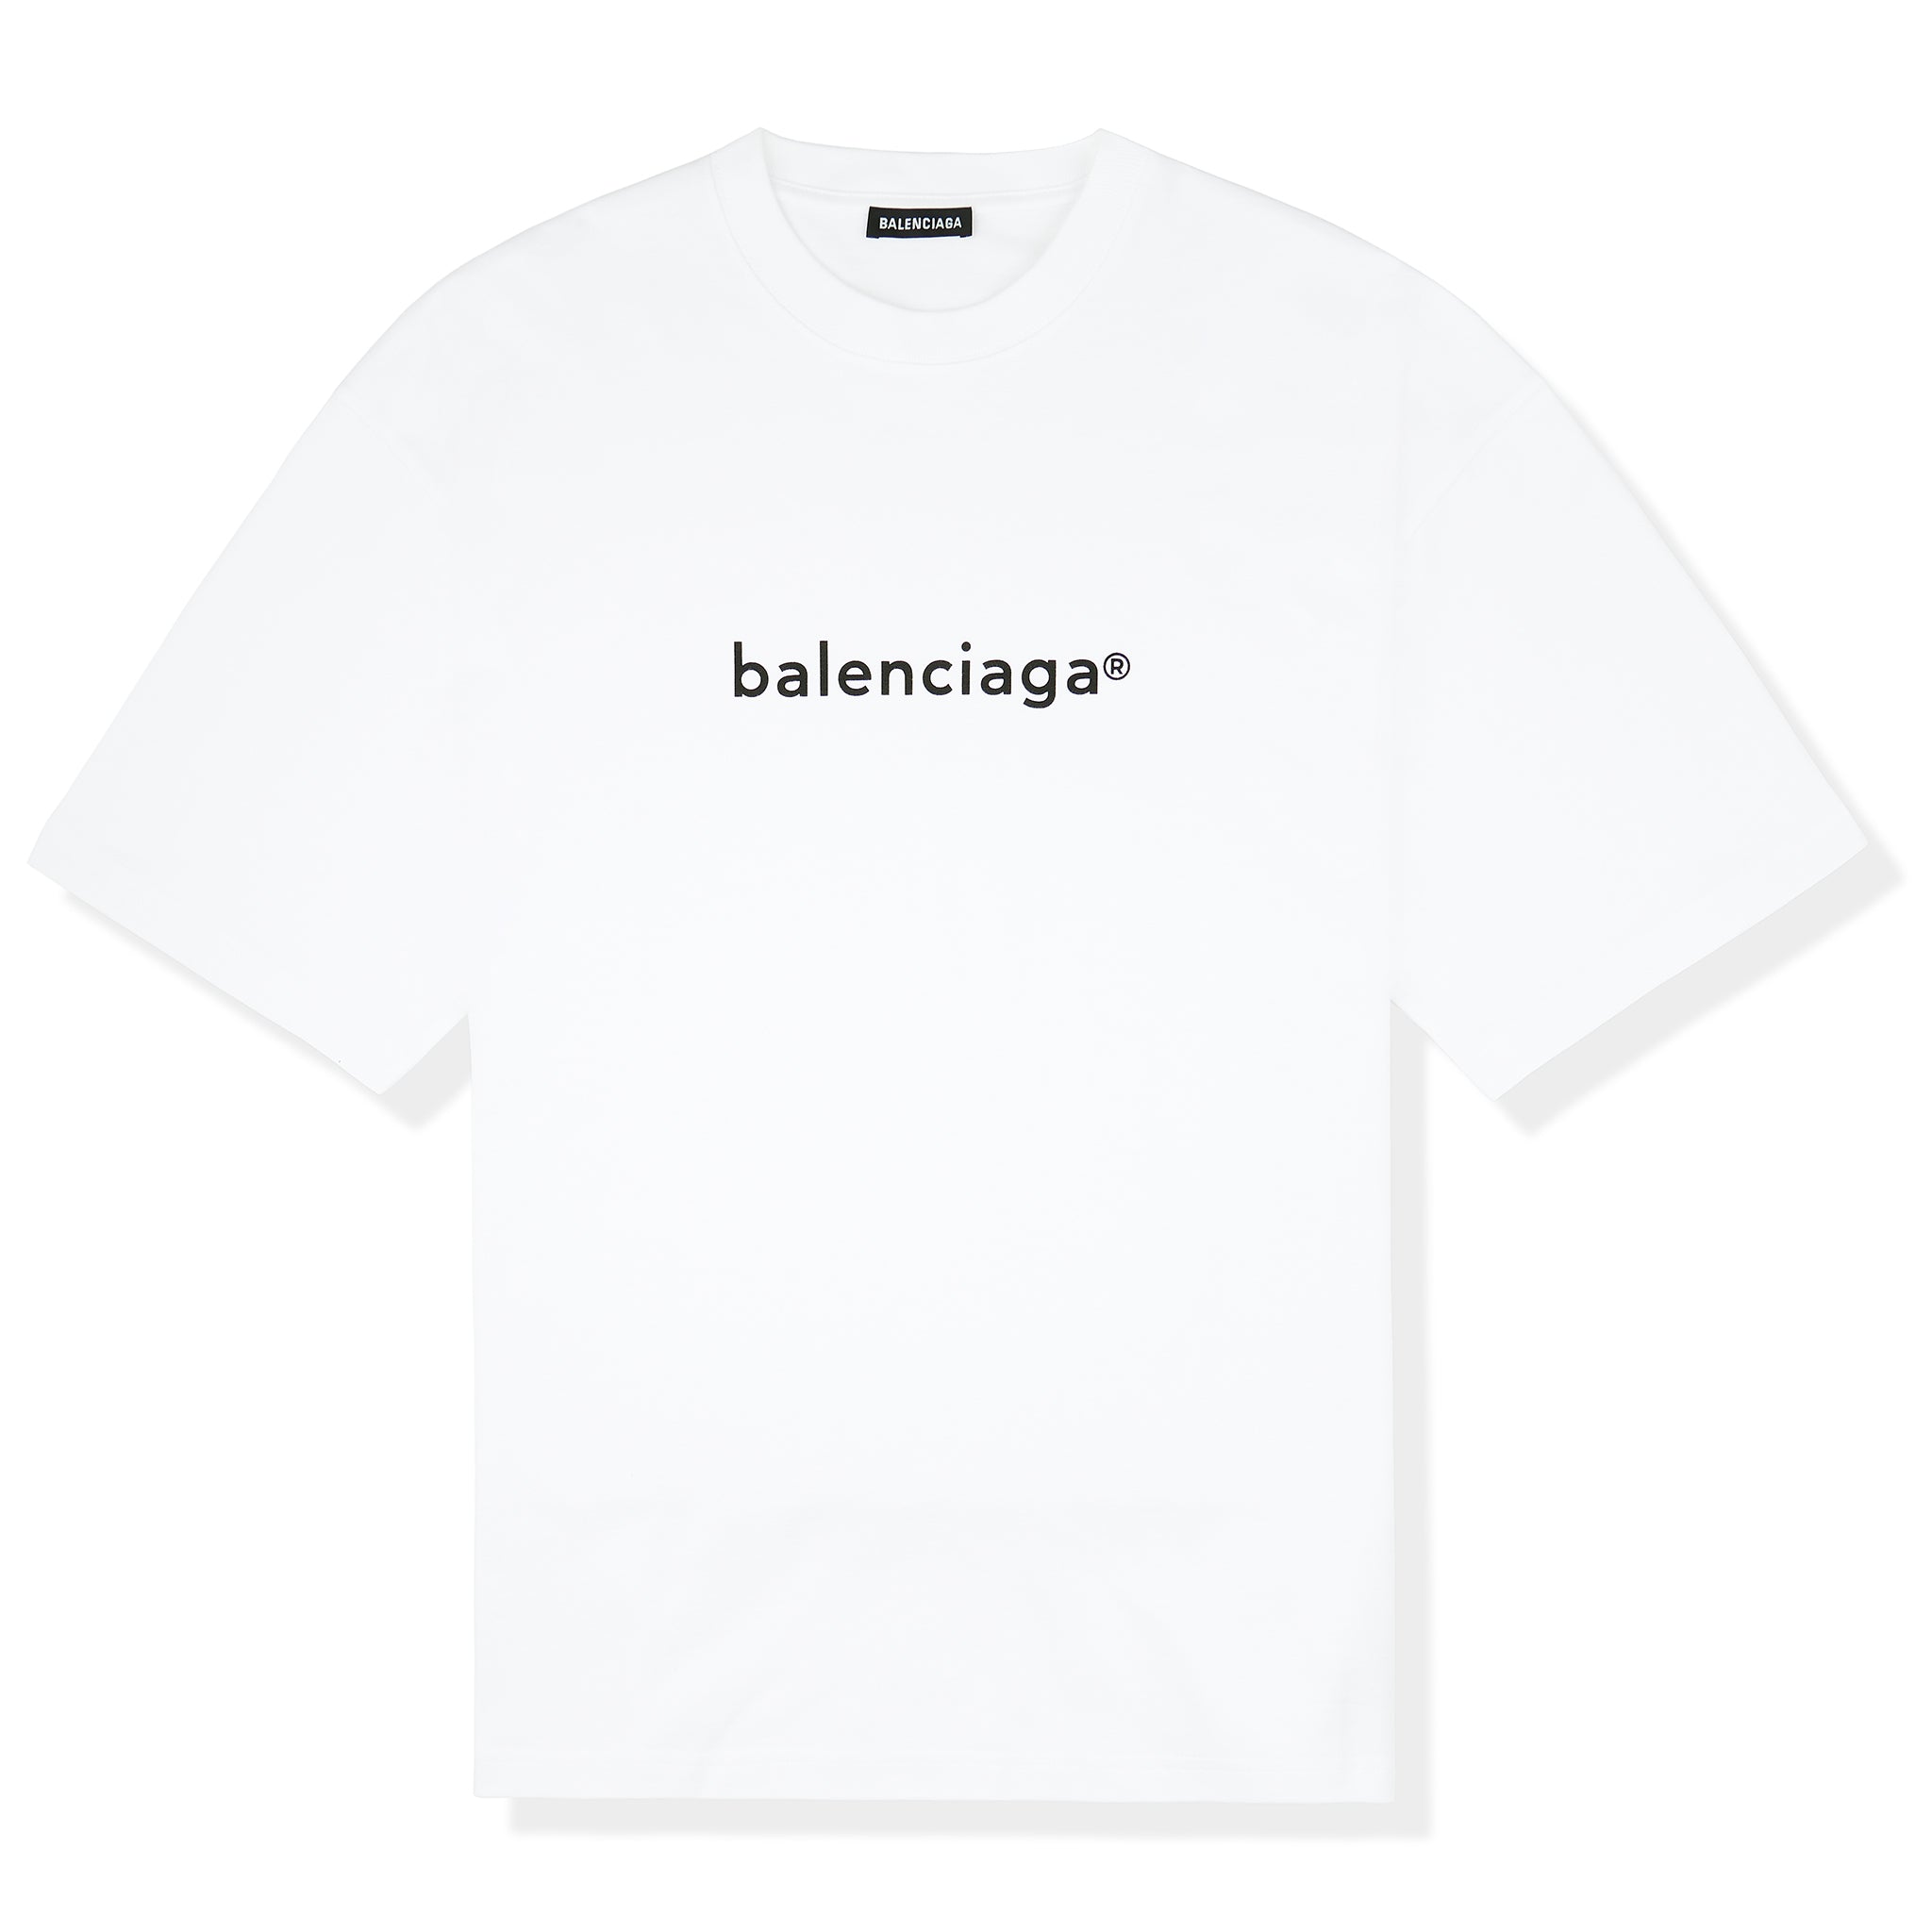 Balenciaga TShirts for Men  Shop Now on FARFETCH